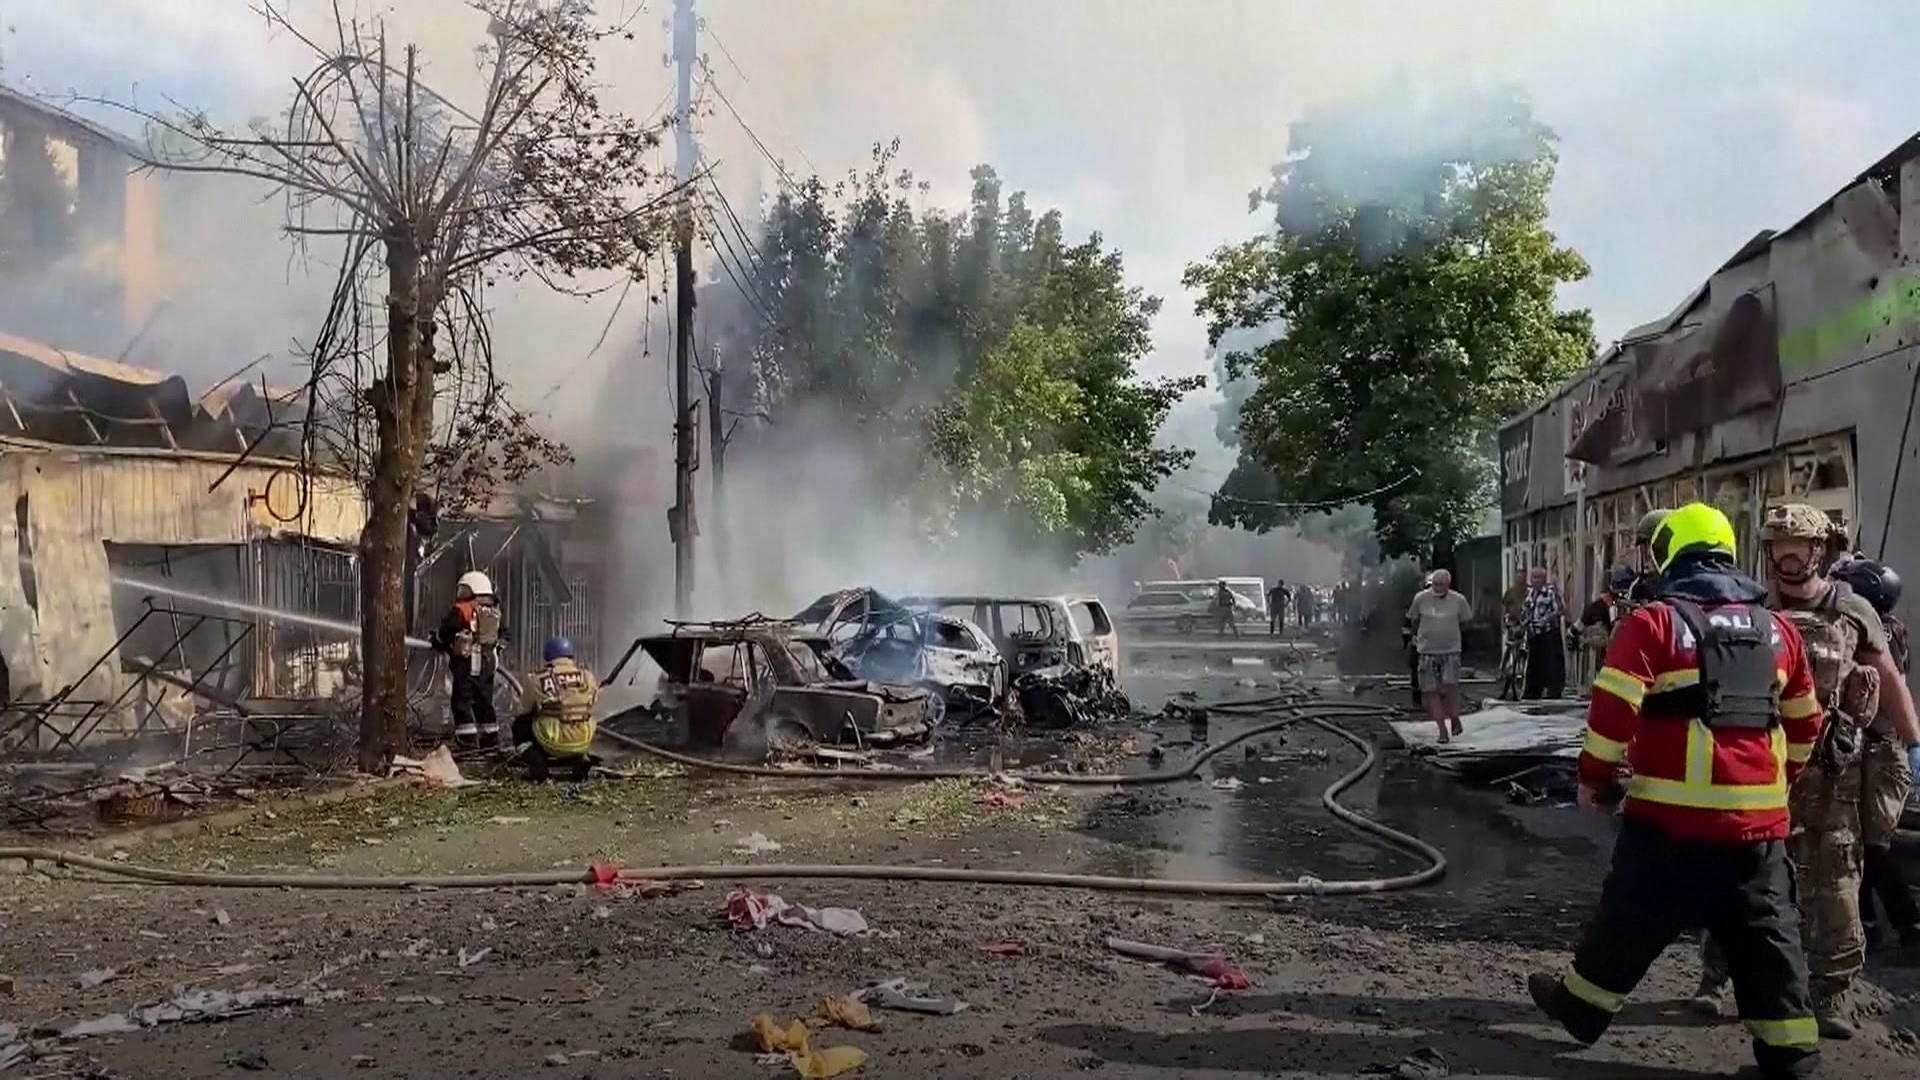 Mindestens 17 Tote bei Angriff in Ukraine Rakete kracht auf Markt